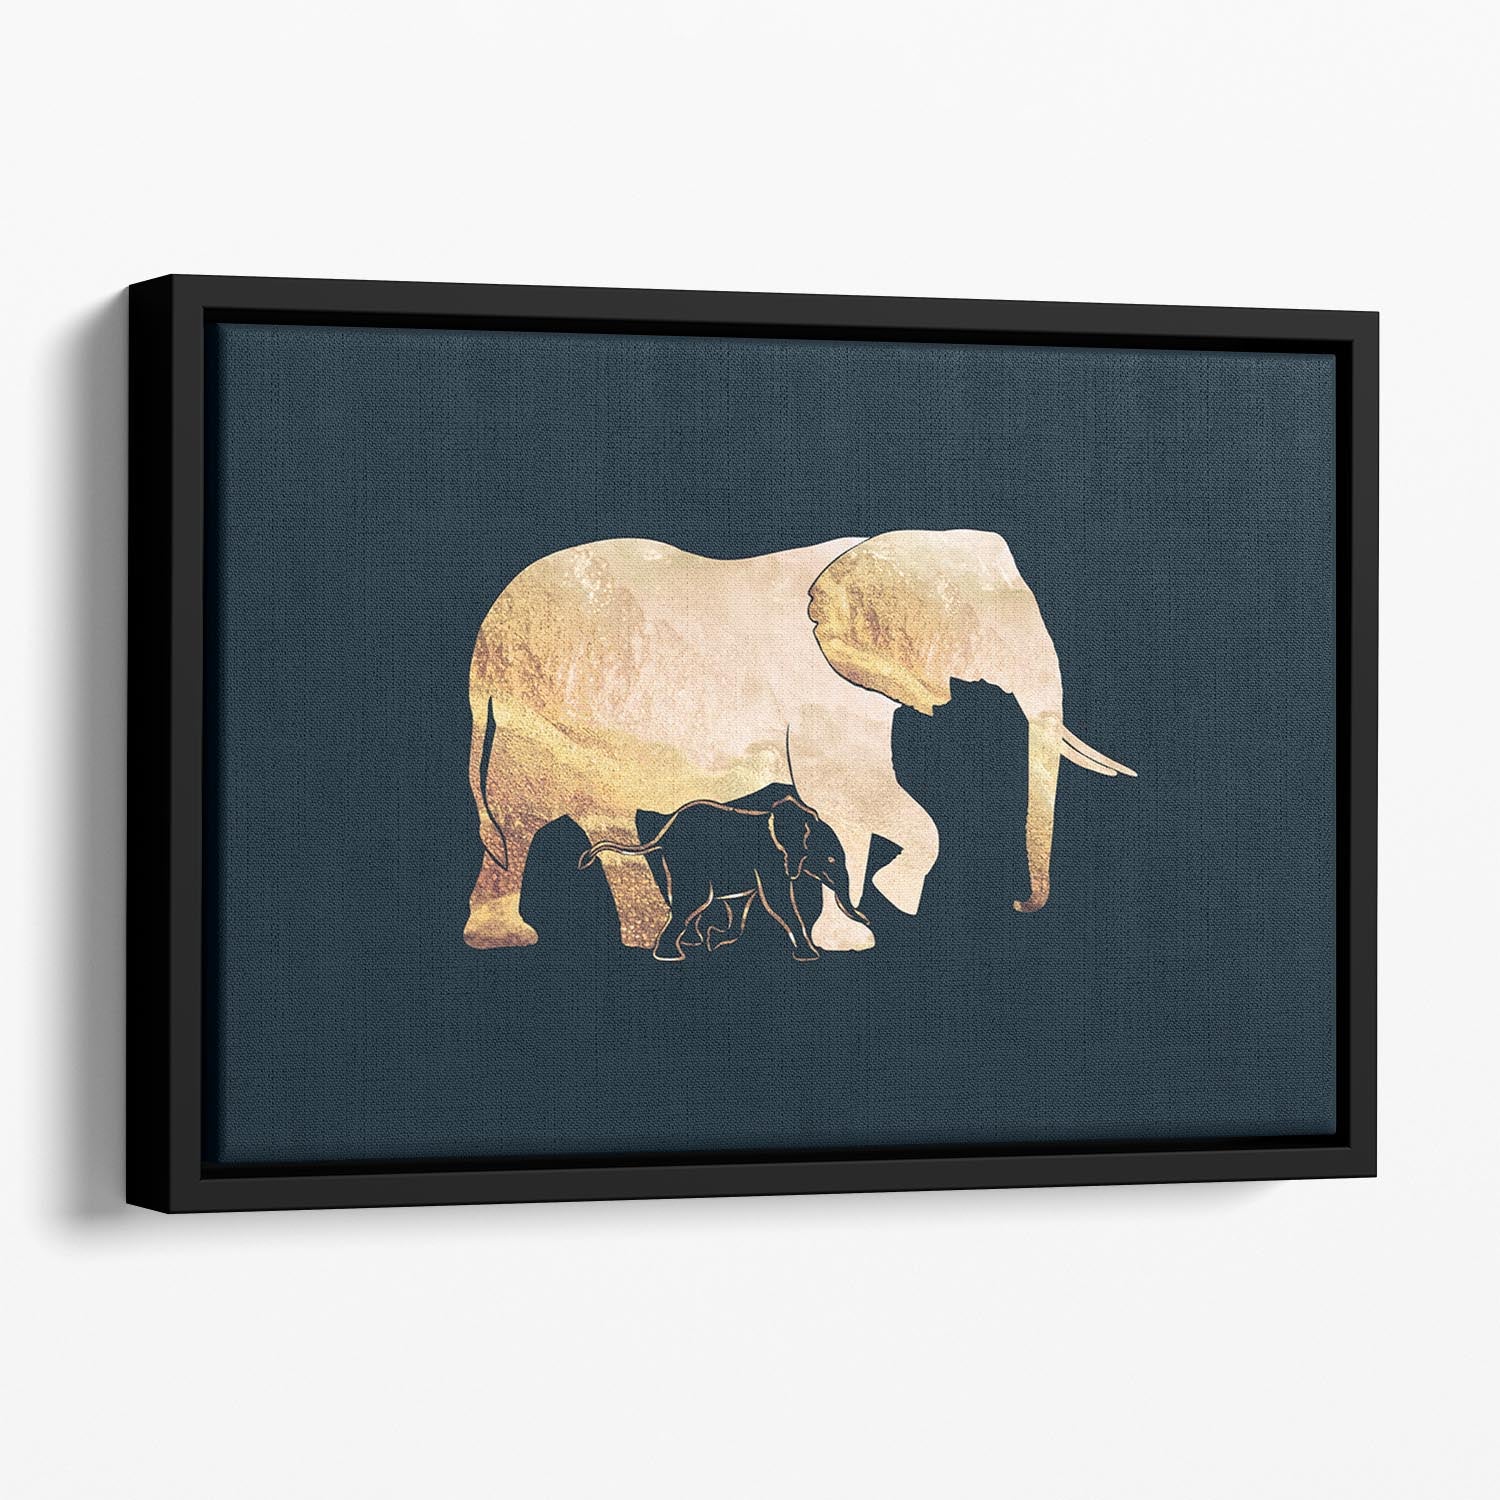 Black gold elephants 2 Floating Framed Canvas - 1x - 1